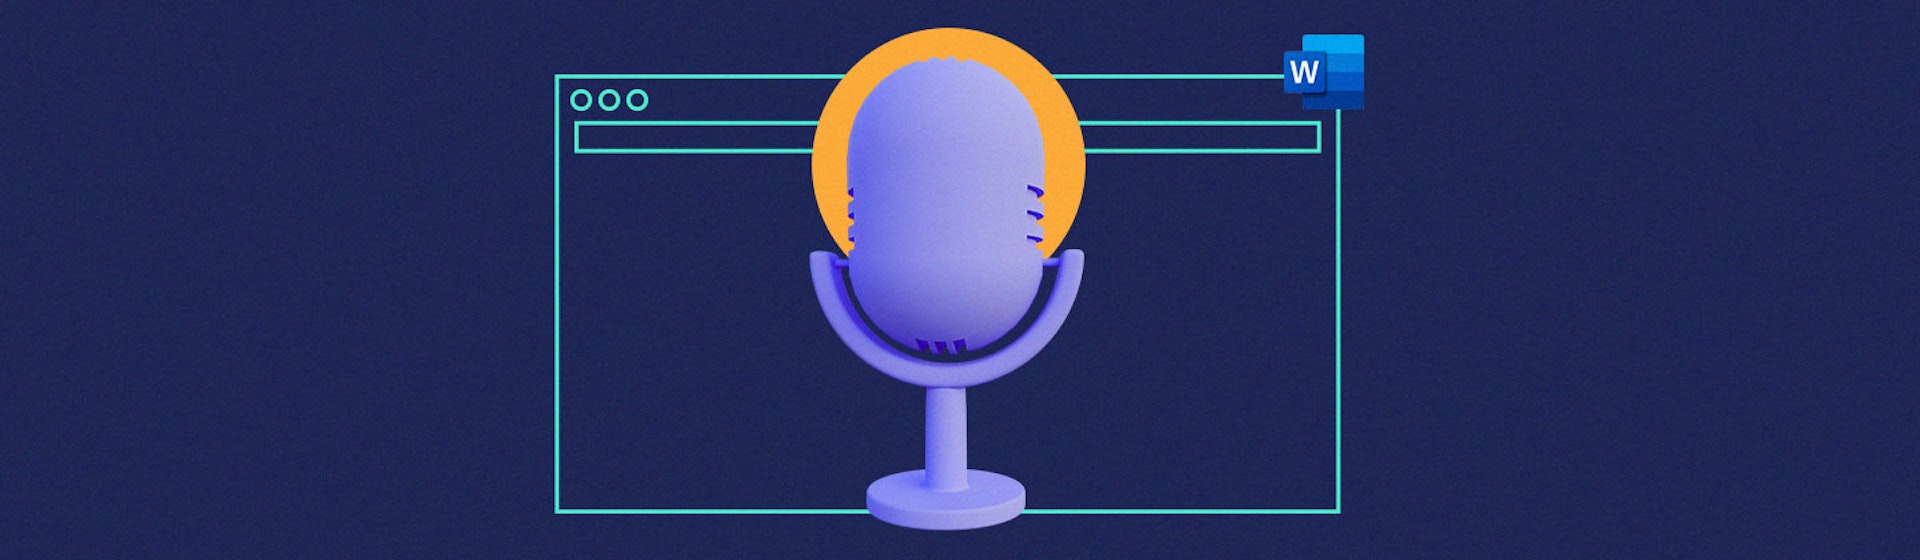 Aprende cómo activar el micrófono en Word y escribe lo que necesitas utilizando tu voz